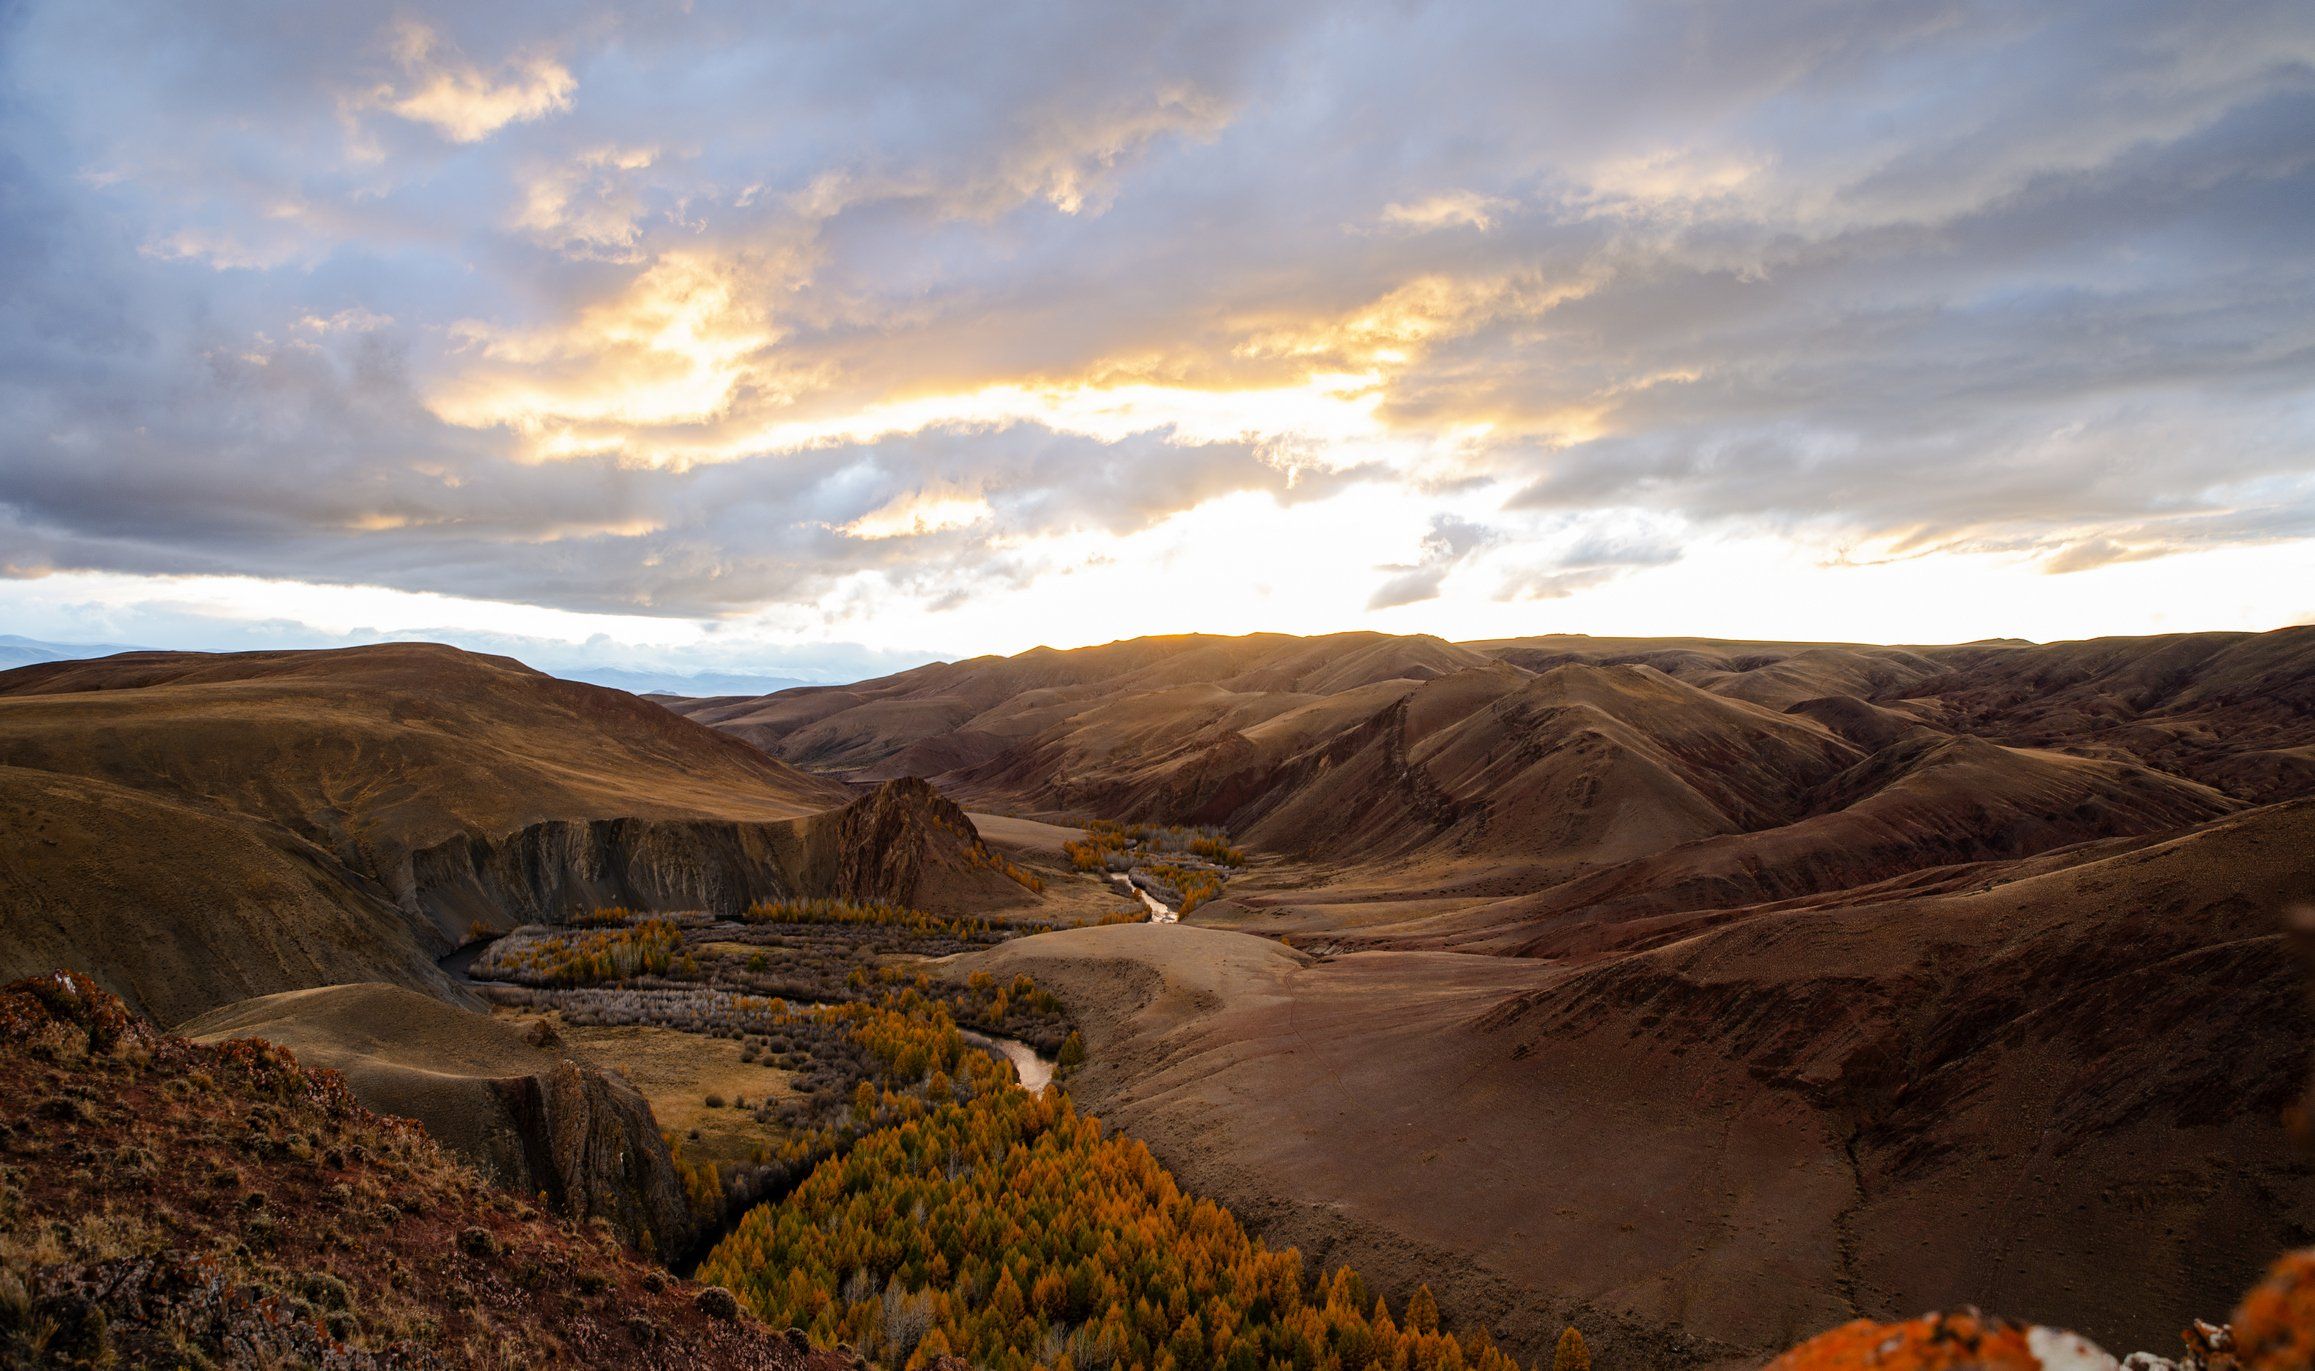 долина реки кызыл-шин ,урочище кокоря , кош - агачский район, горный алтай. сентябрь 2020, Ольга Лукахина